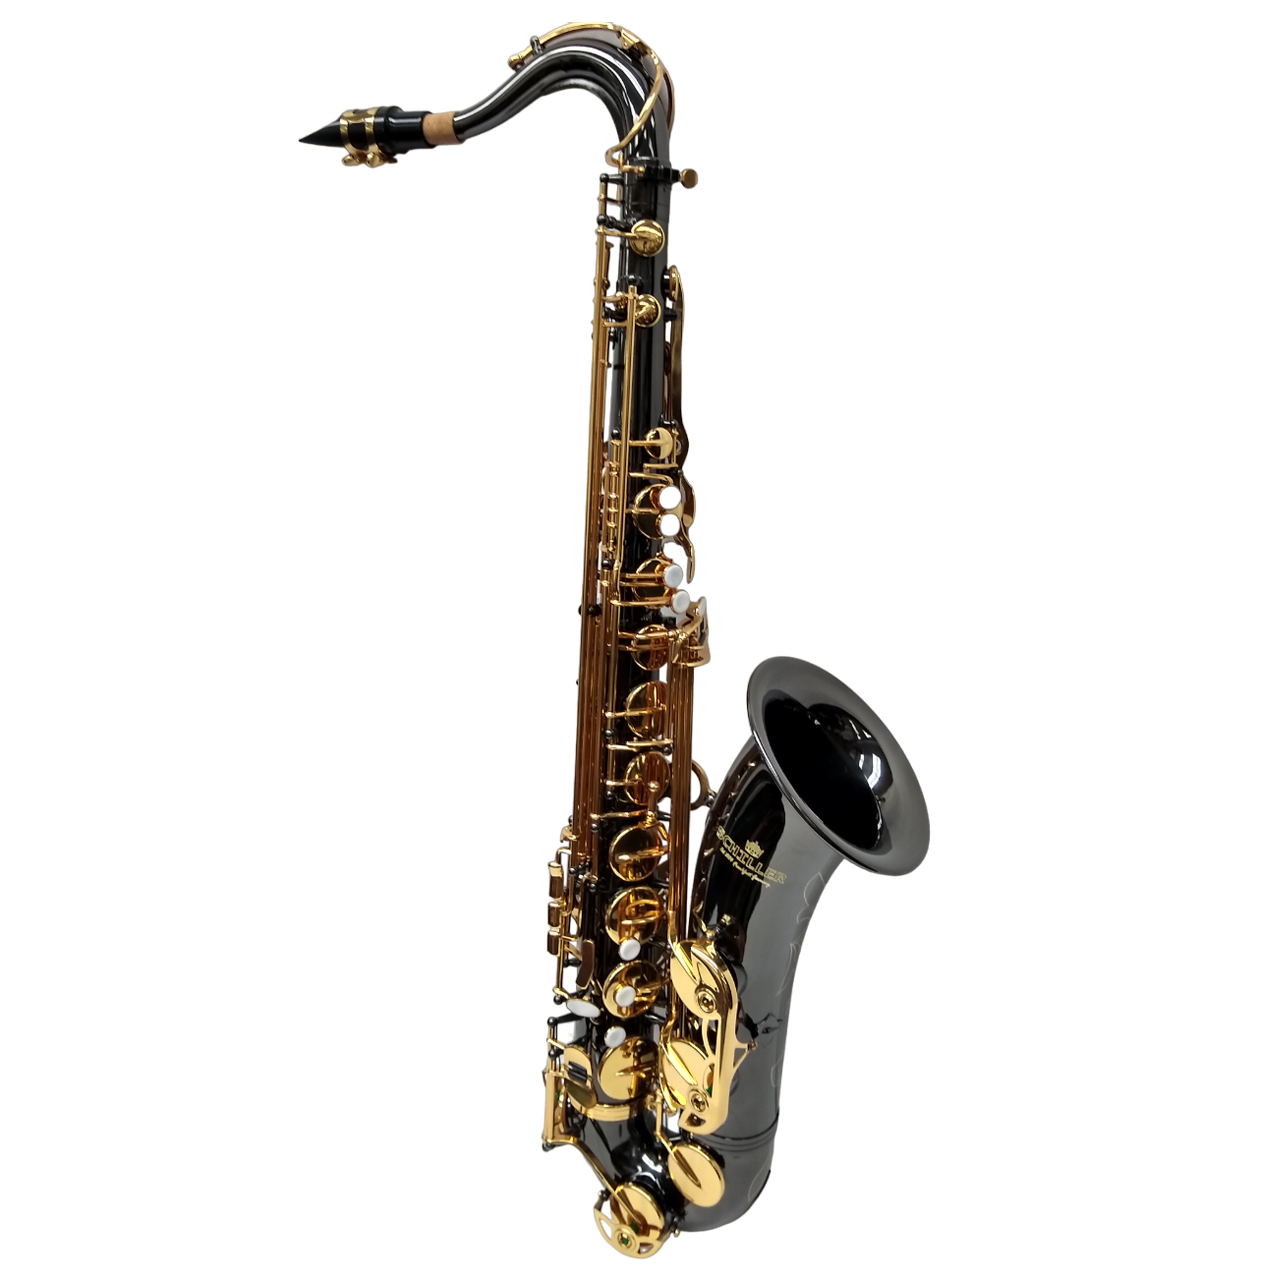 Schiller American Heritage 400 Tenor Saxophone – Black Nickel/Gold Keys